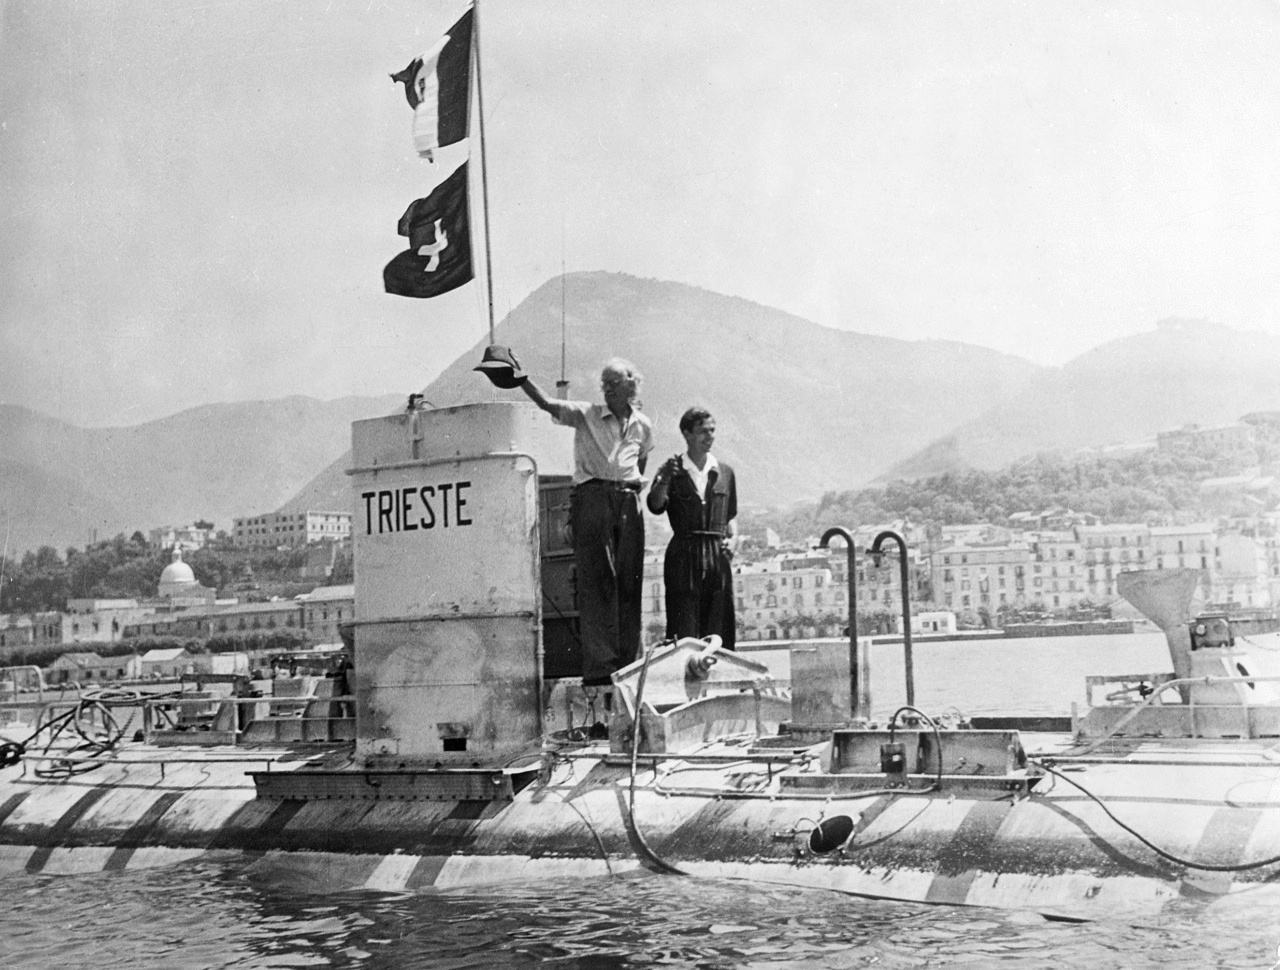 Ulisse - Il batiscafo Trieste, costruito in Italia, ed in